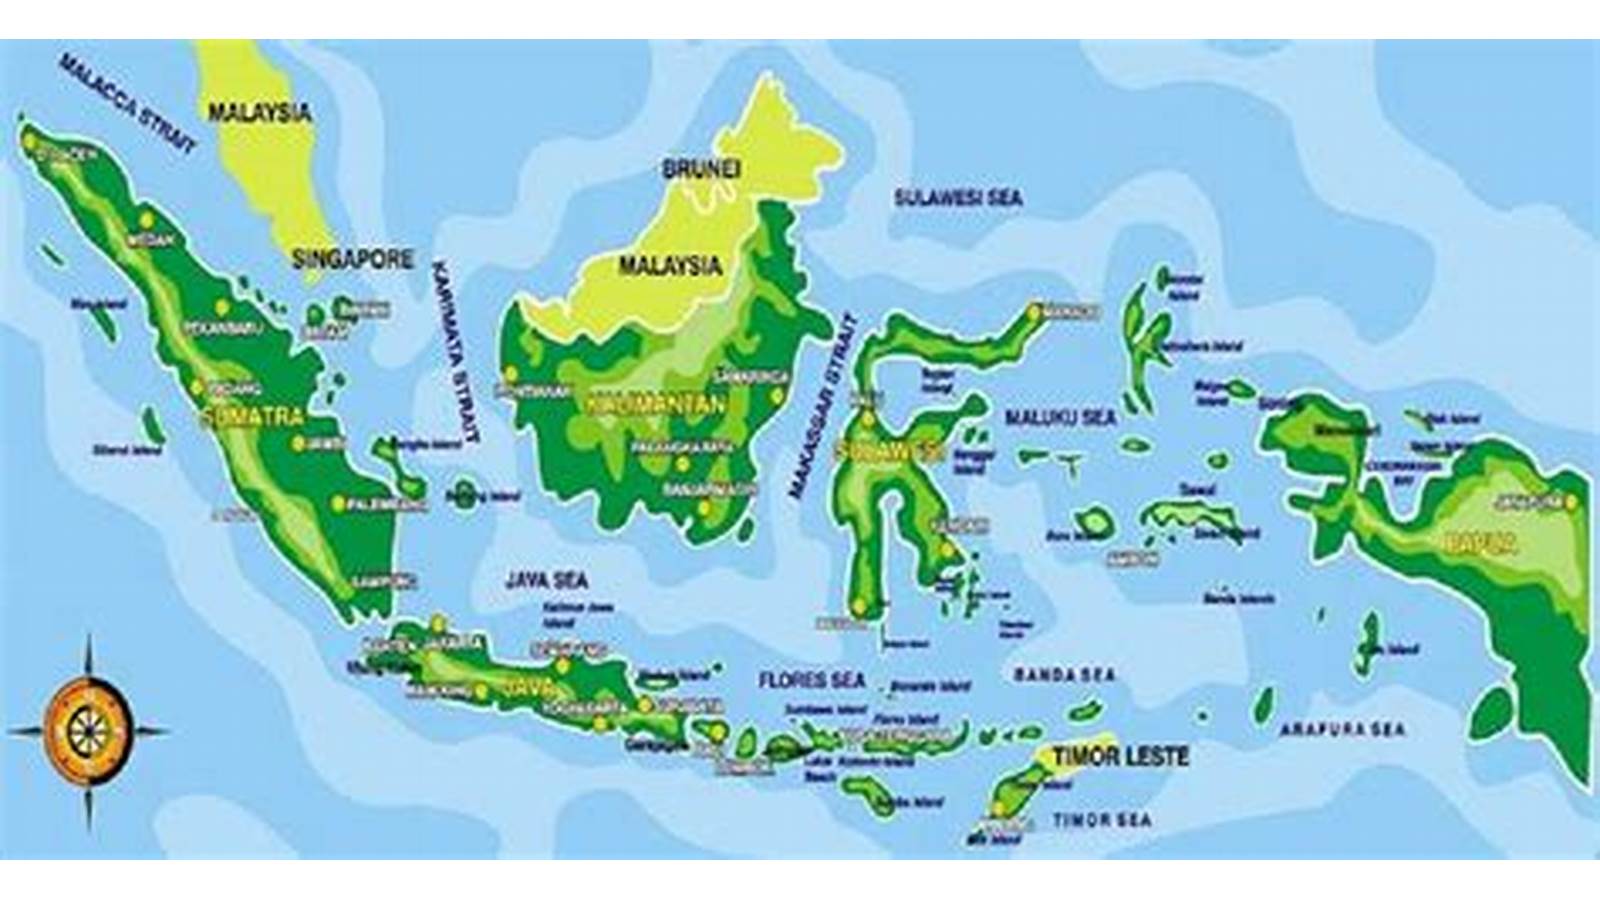 Dimana dan mana, Indonesia